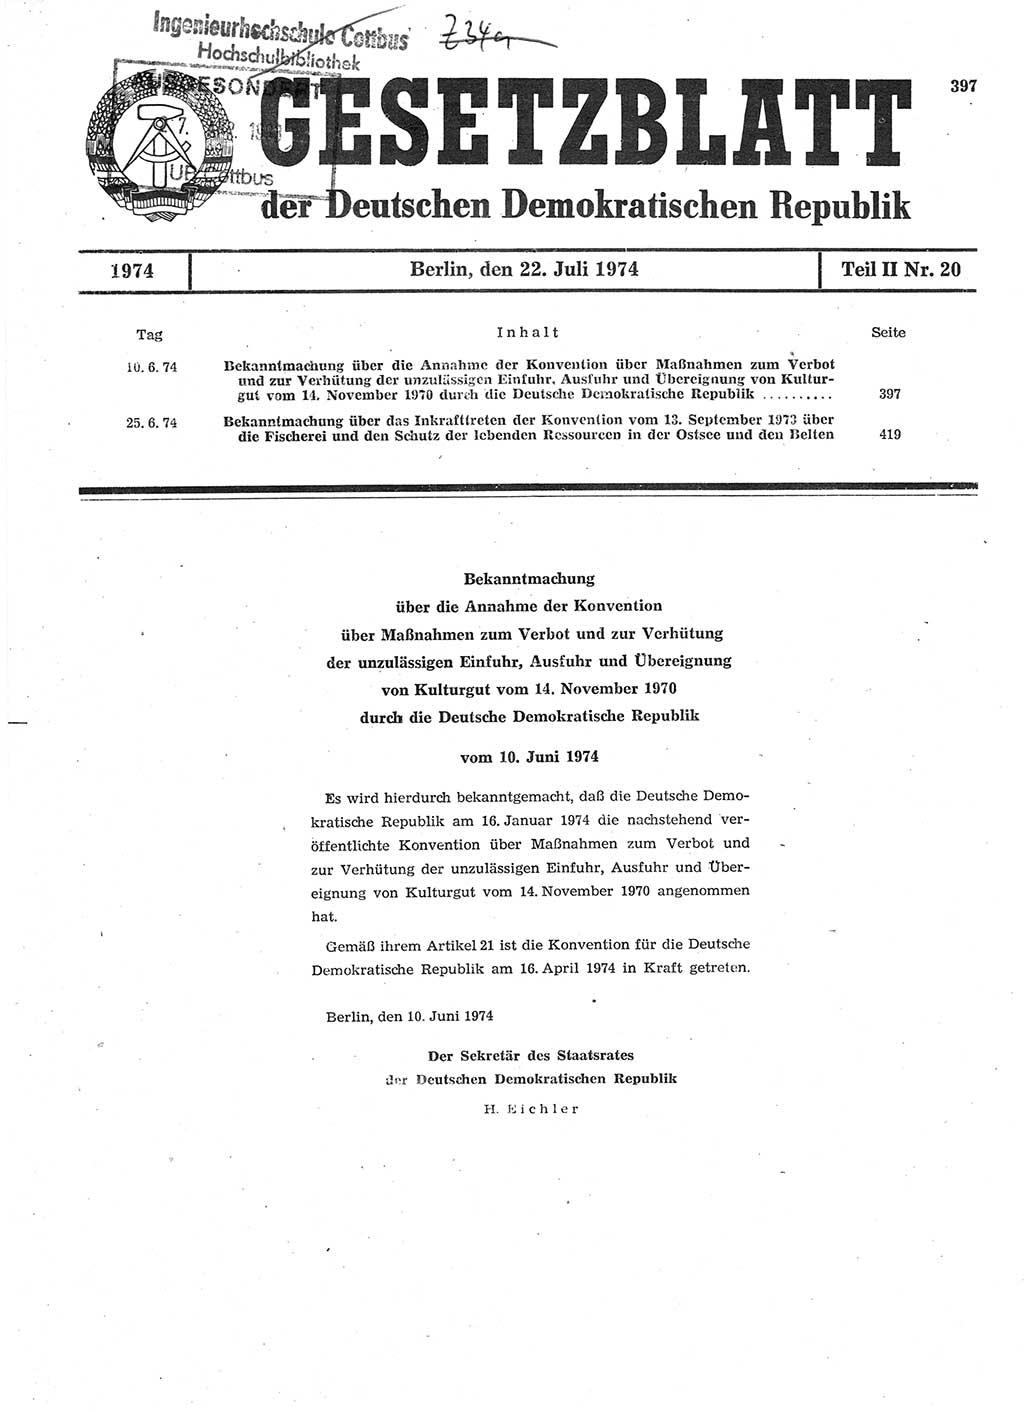 Gesetzblatt (GBl.) der Deutschen Demokratischen Republik (DDR) Teil ⅠⅠ 1974, Seite 397 (GBl. DDR ⅠⅠ 1974, S. 397)